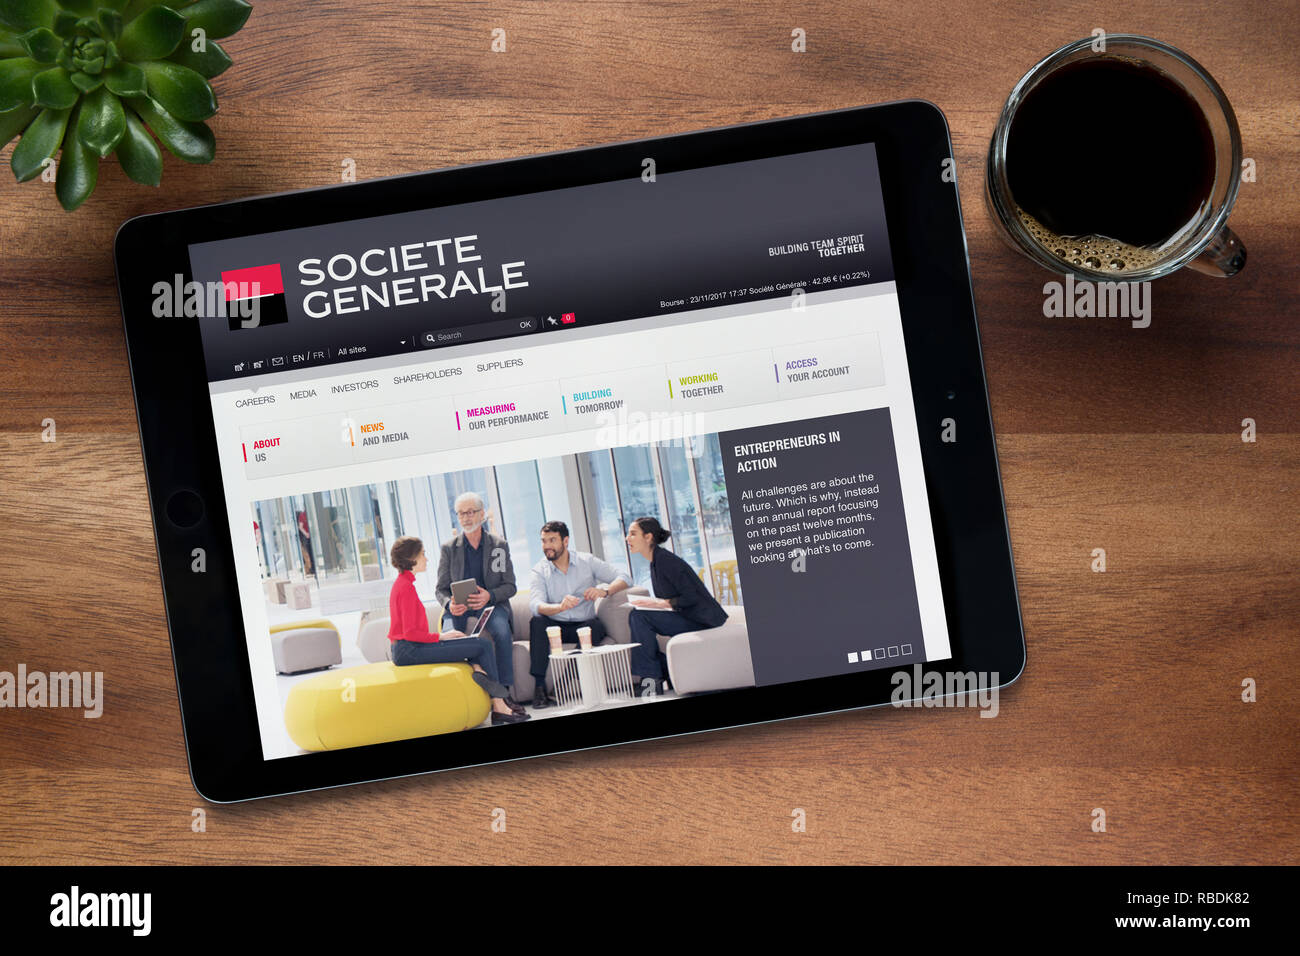 Die Website von Societe Generale ist auf einem iPad Tablet gesehen, auf einer hölzernen Tisch zusammen mit einem Espresso und einem Haus Anlage (nur redaktionelle Nutzung). Stockfoto